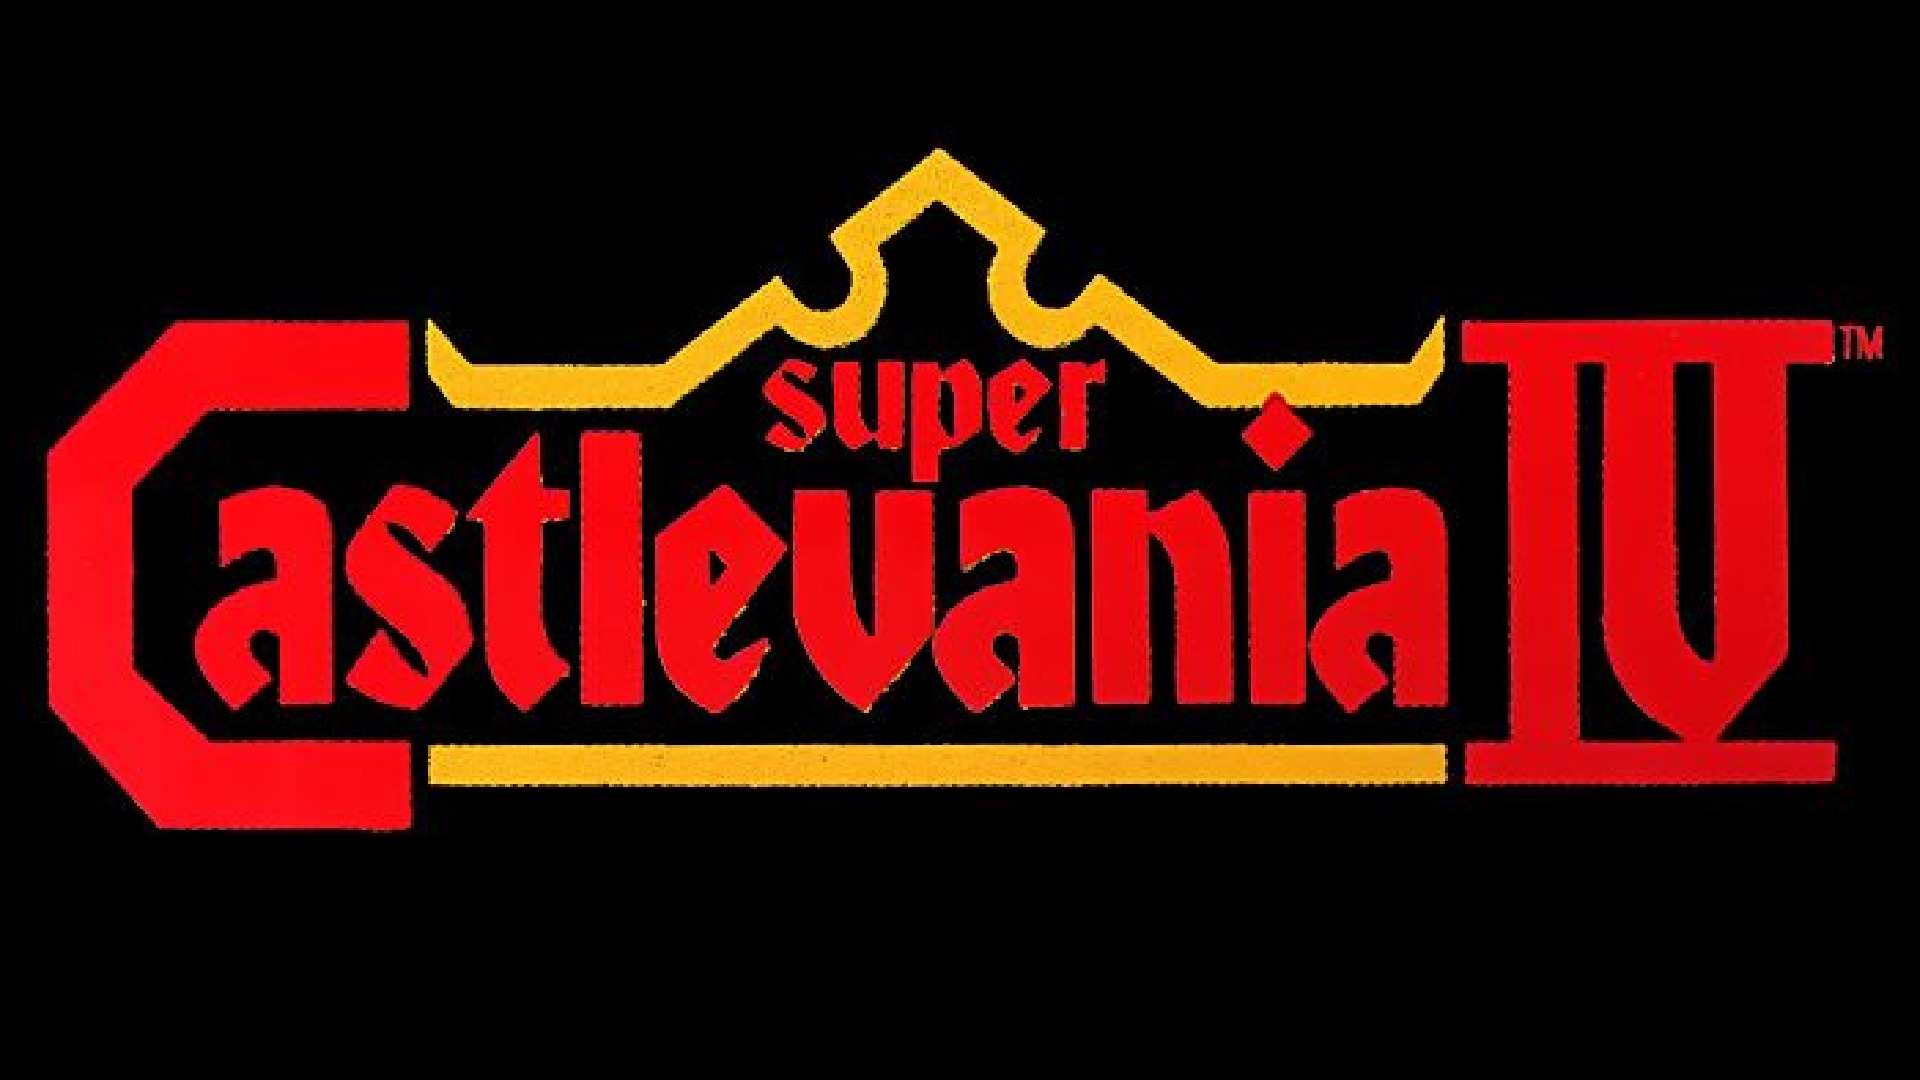 Super Castlevania IV Logo